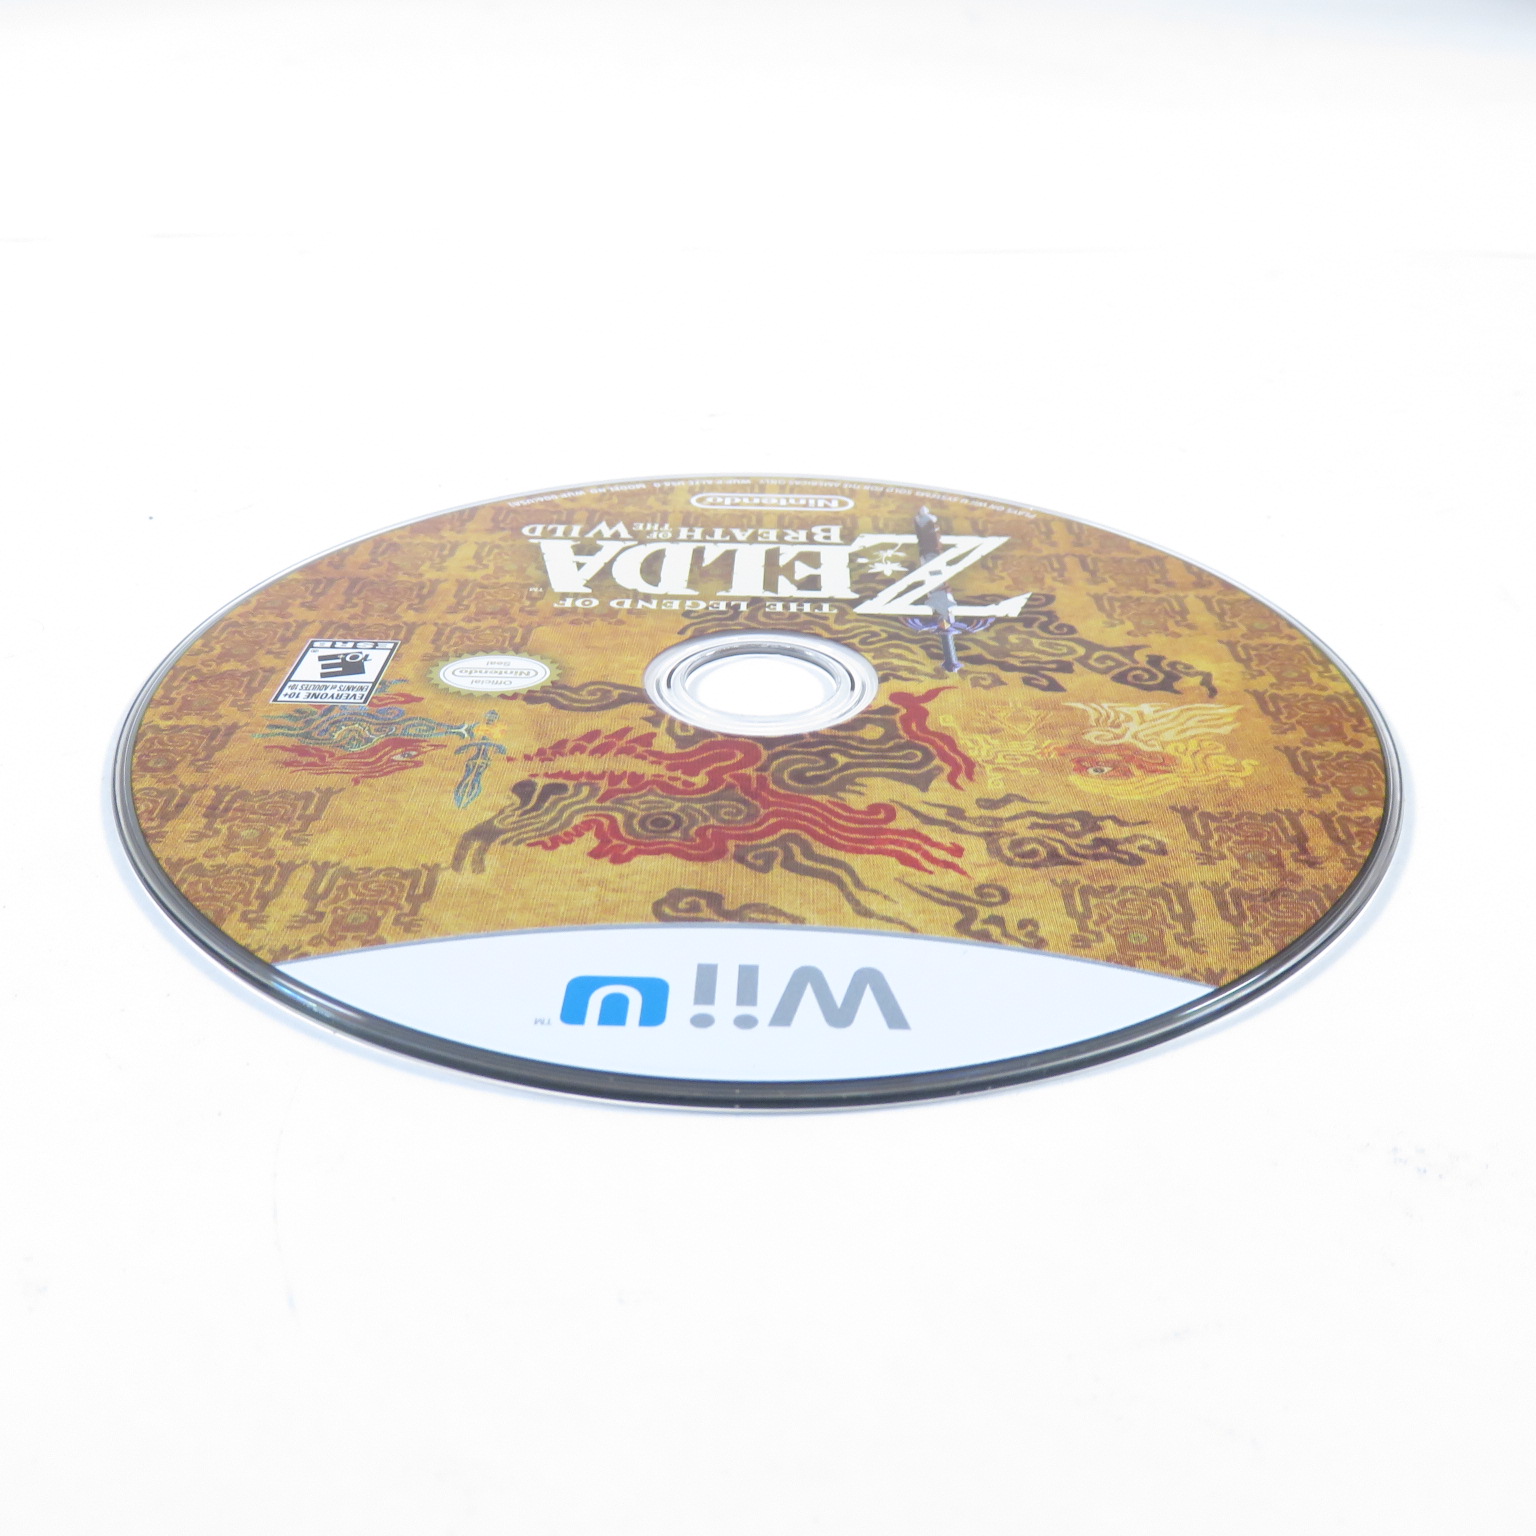 Zelda: Breath of the Wild Wii U disc art